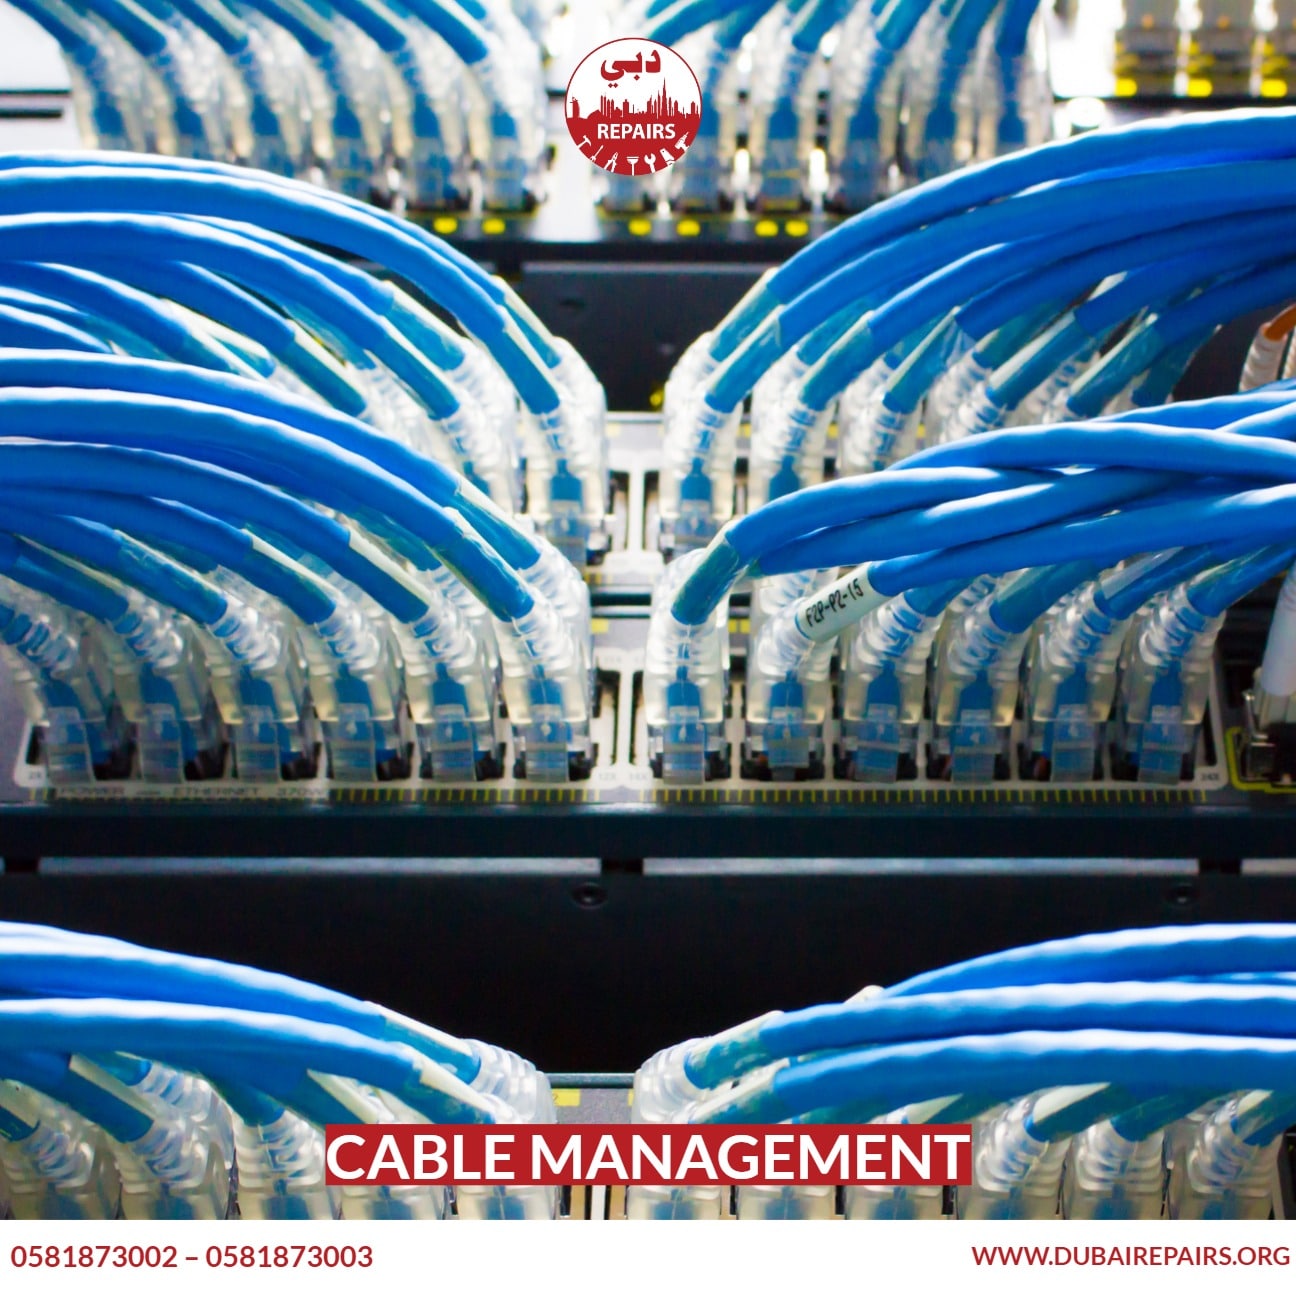 Cable Management Service Dubai - 0581873002, Electrician Dubai